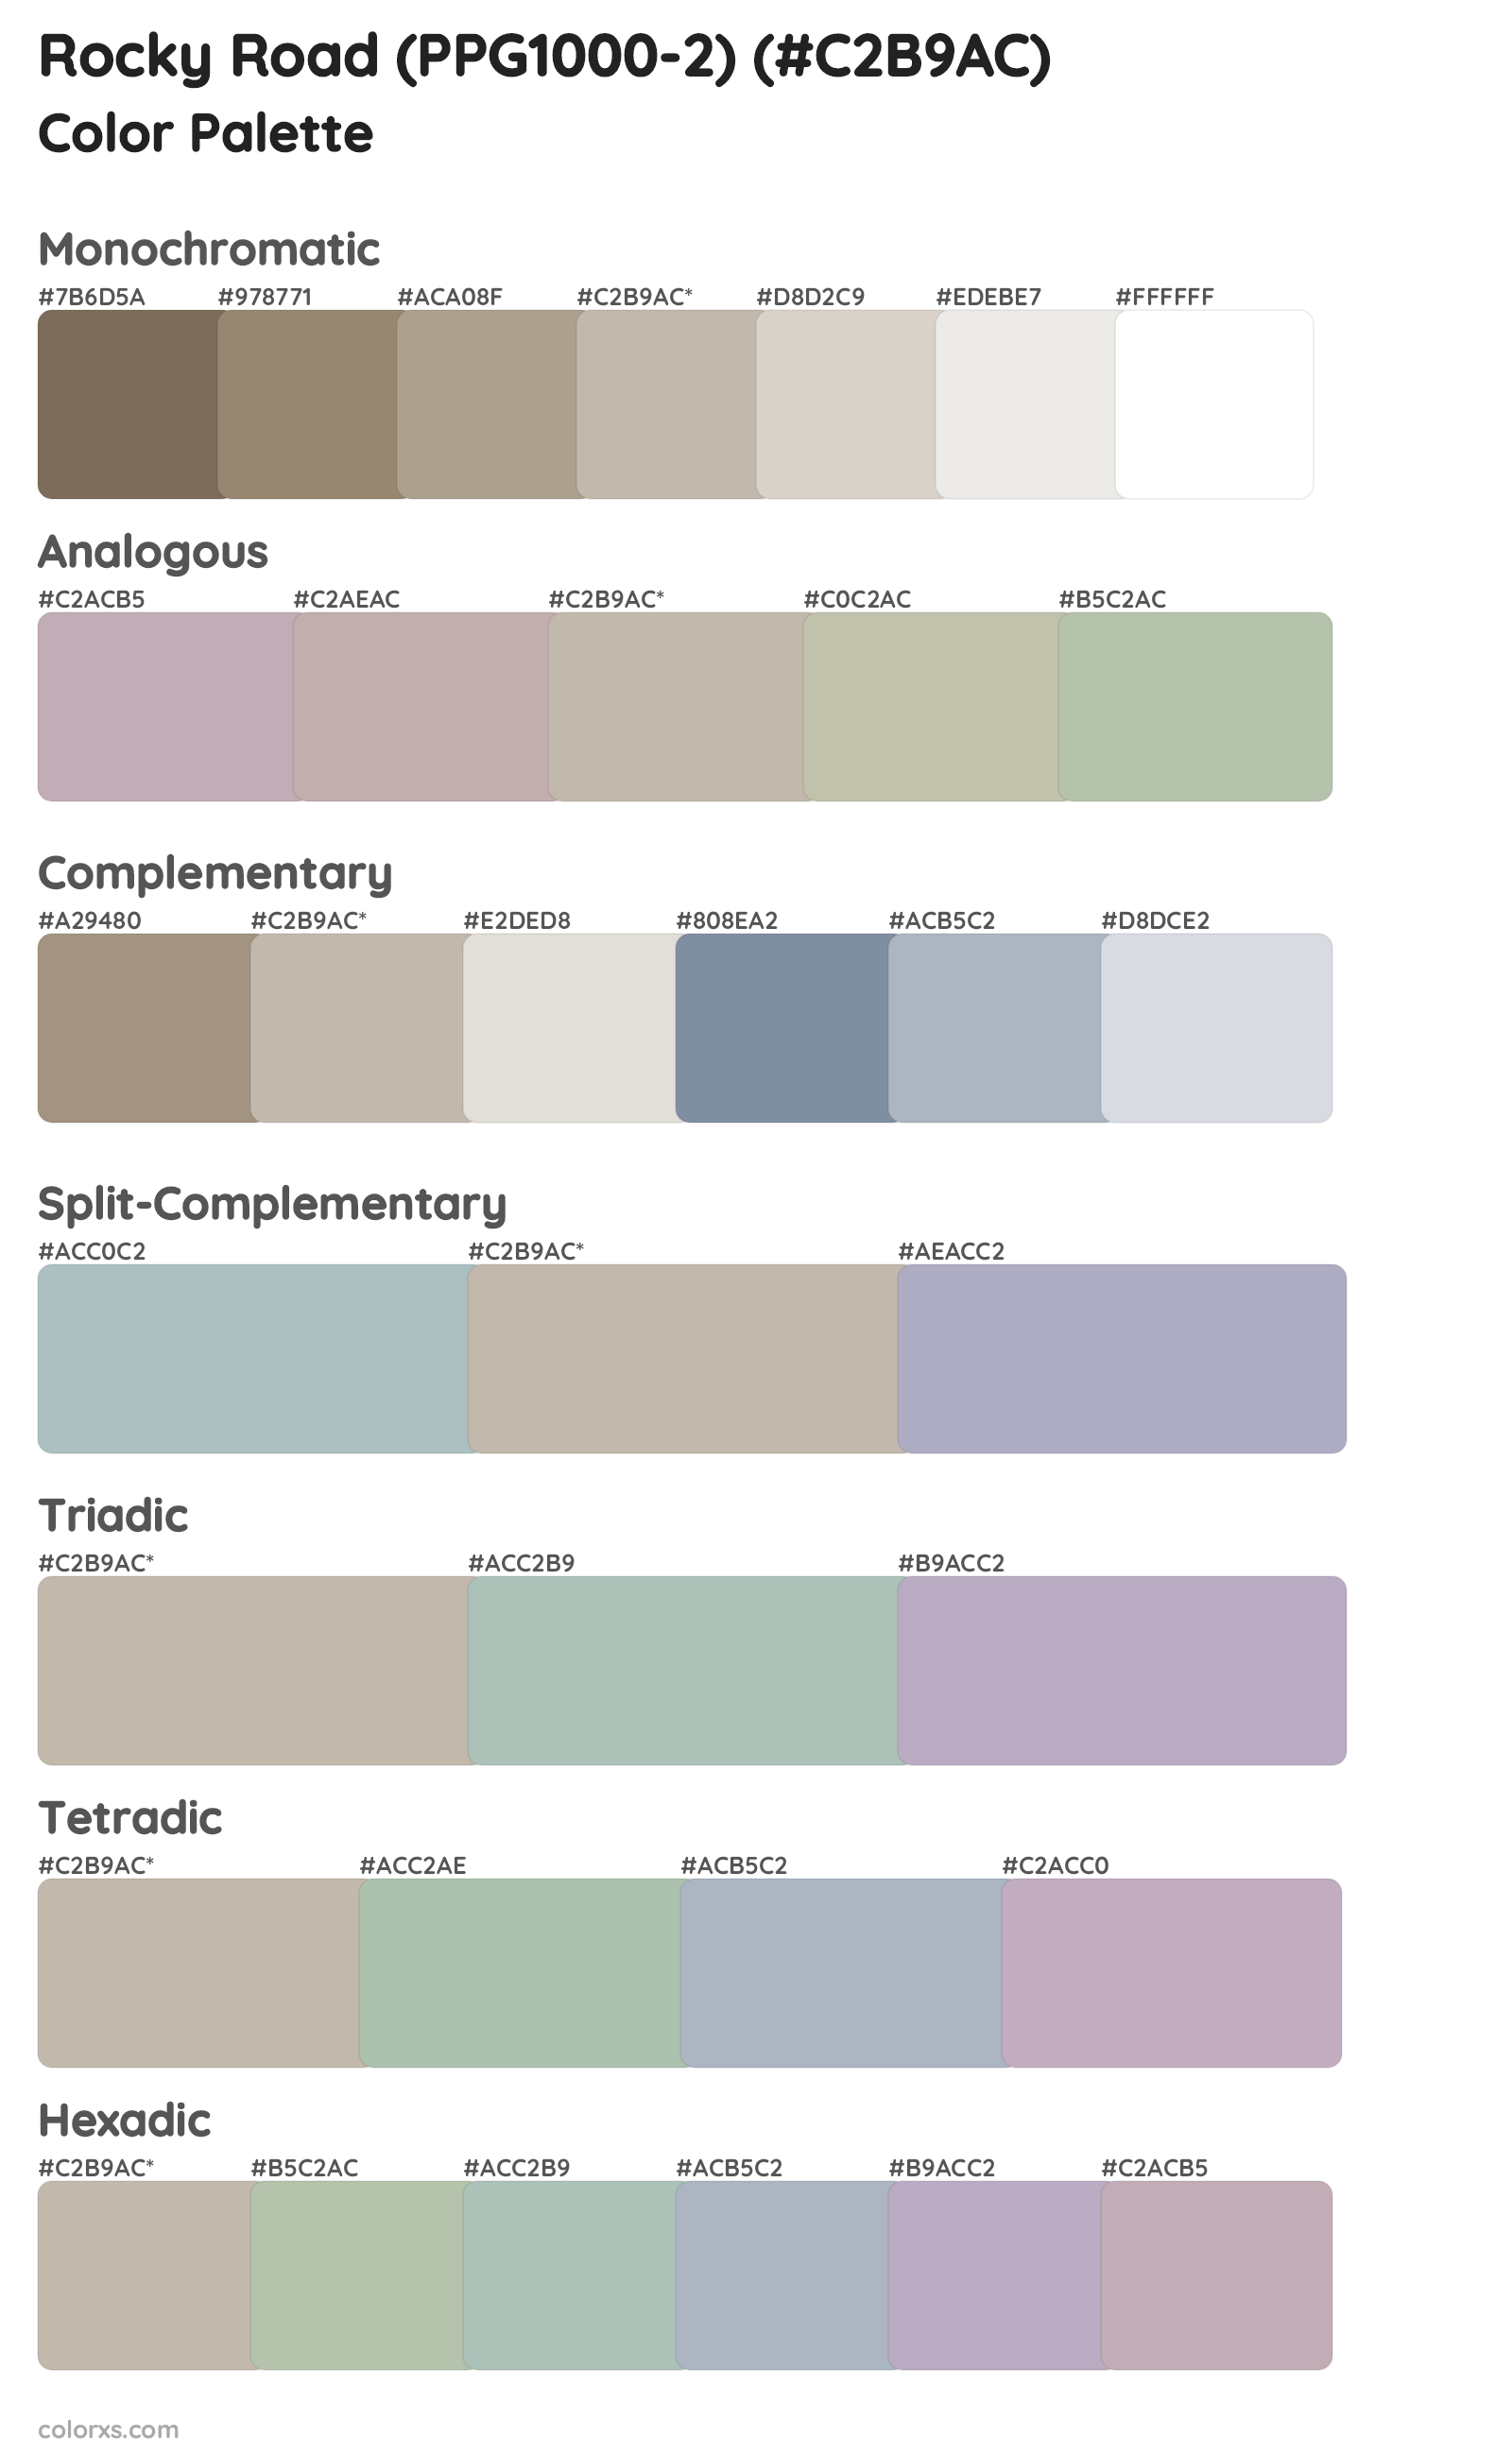 Rocky Road (PPG1000-2) Color Scheme Palettes